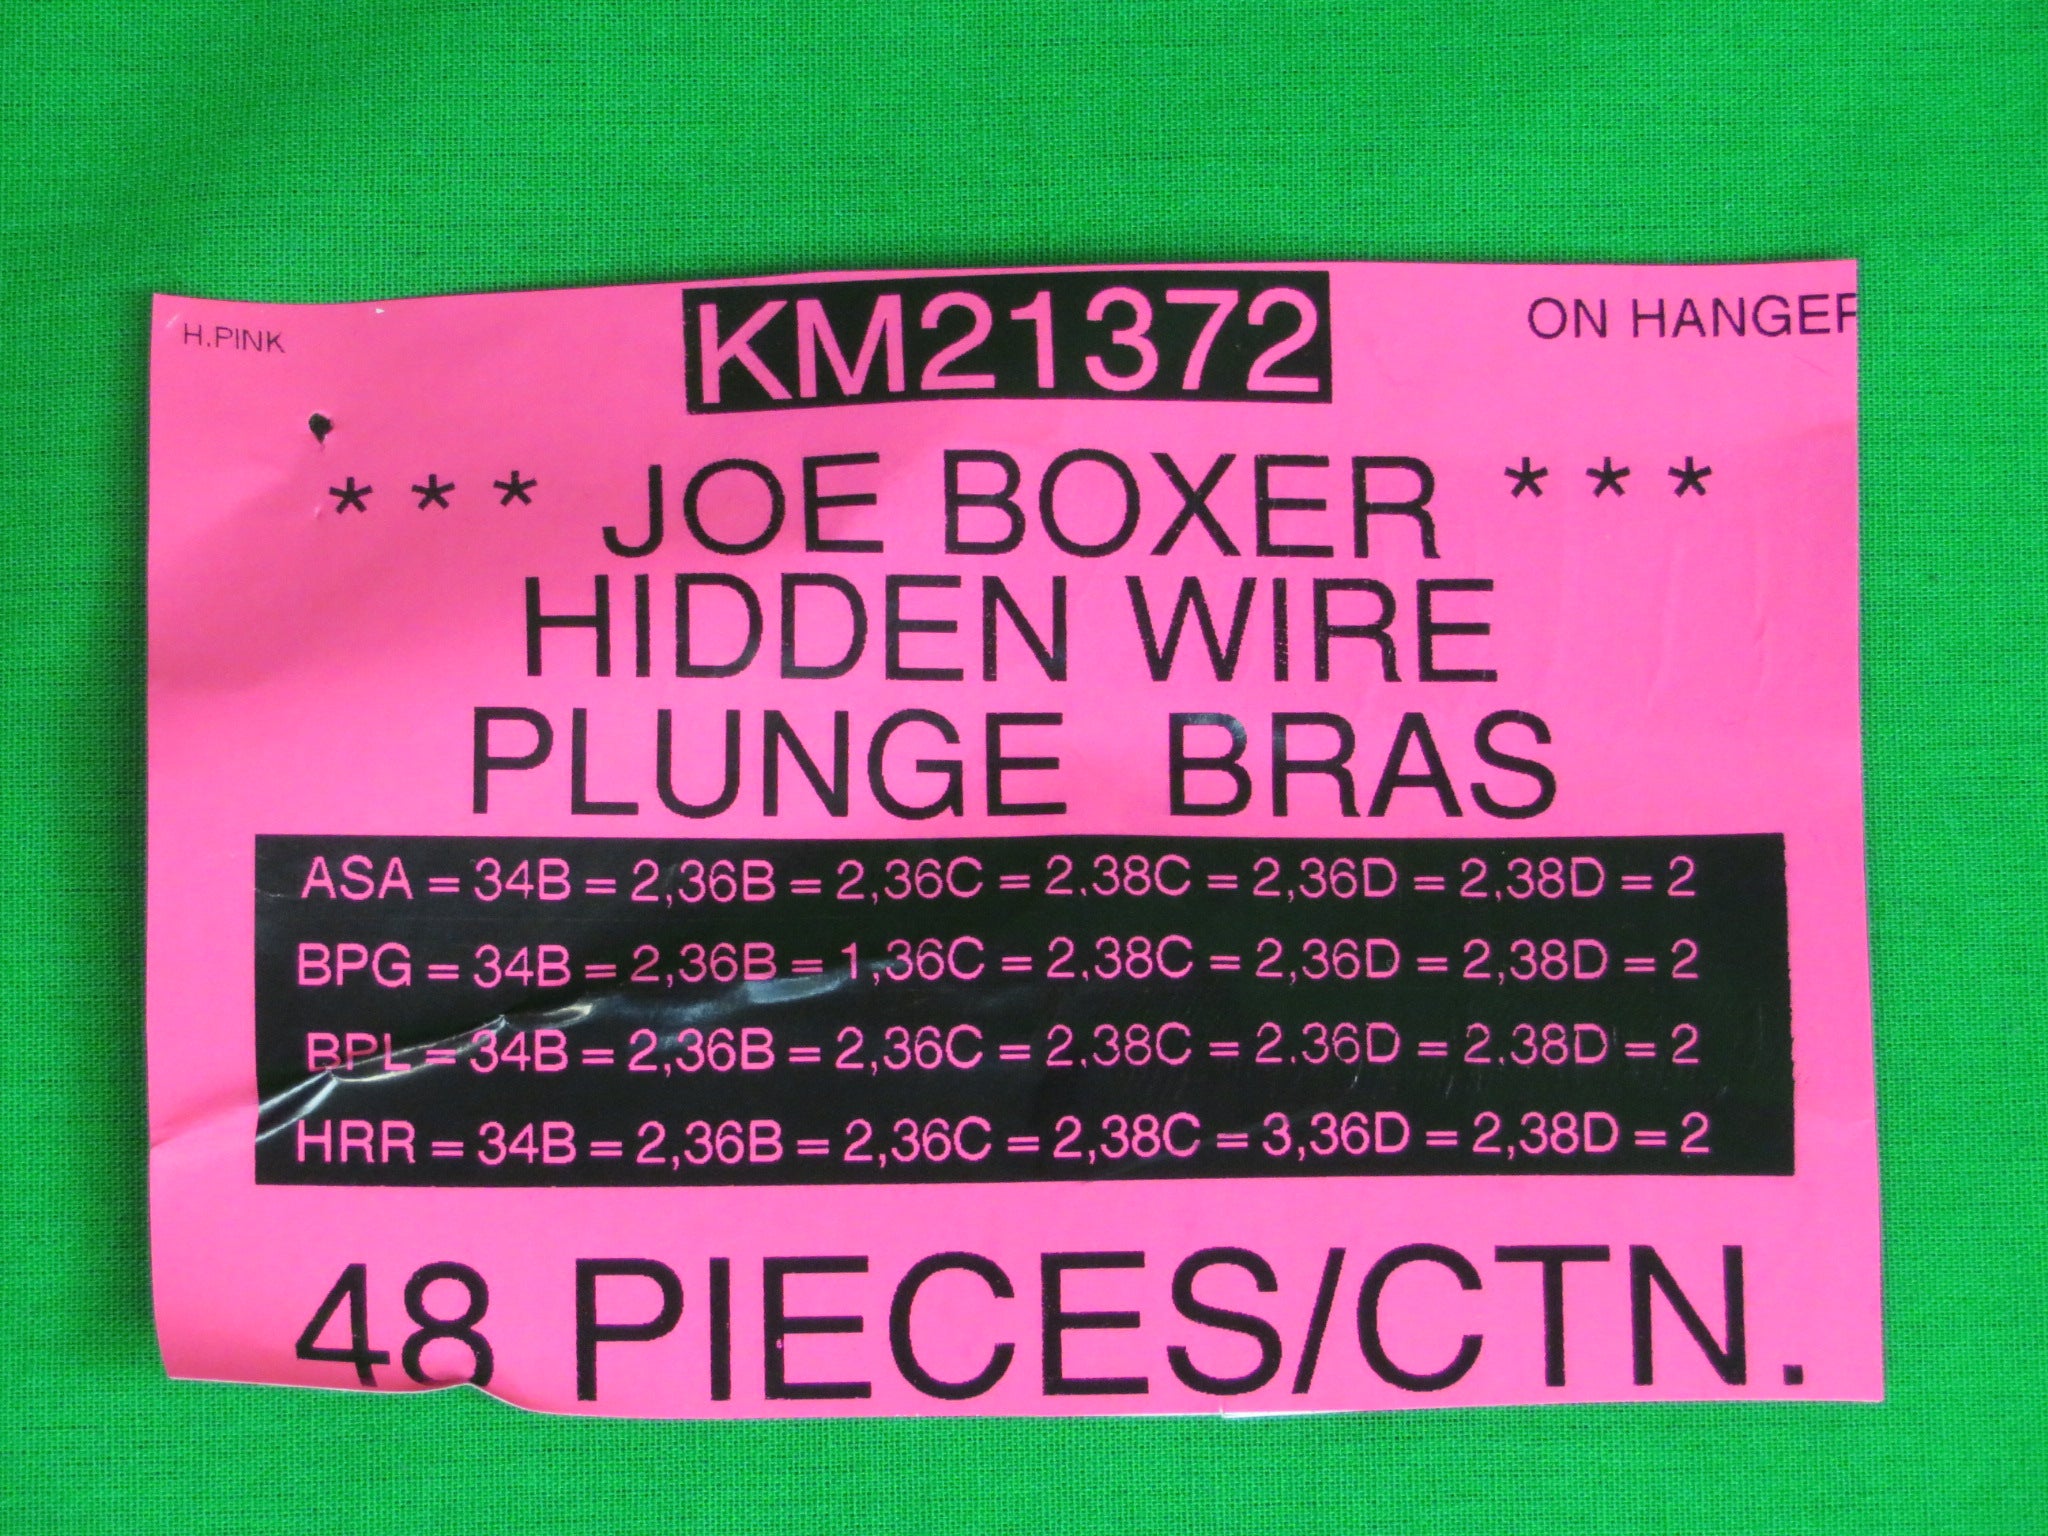 Joe Boxer Hidden Wire Plinge Bras Style KM21372 – Atlantic Wholesale